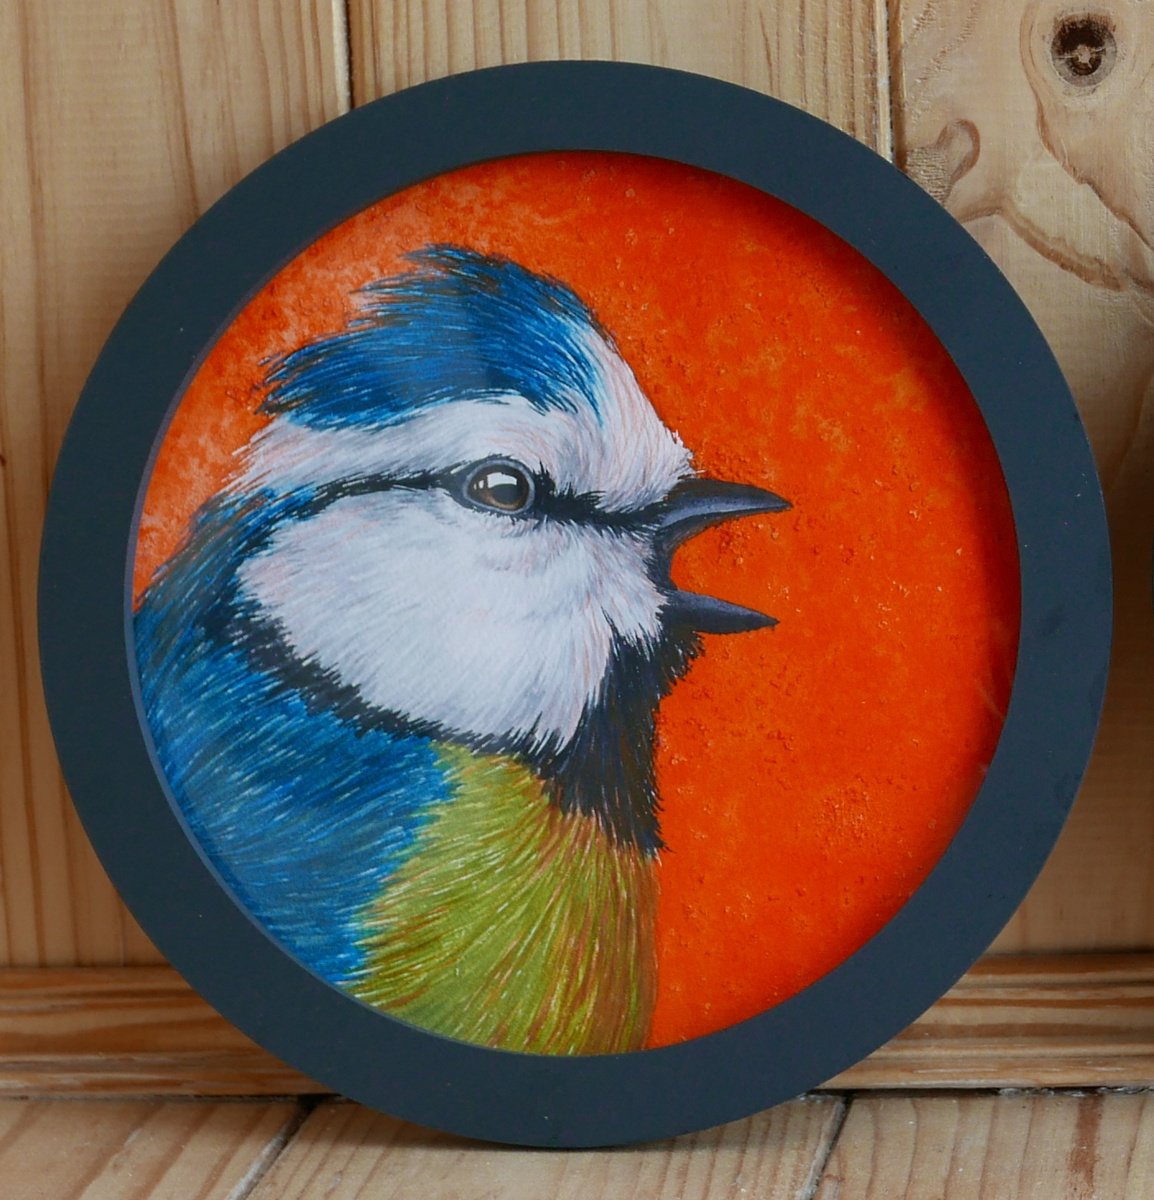 Blue tit with orange background by Karina Danylchuk